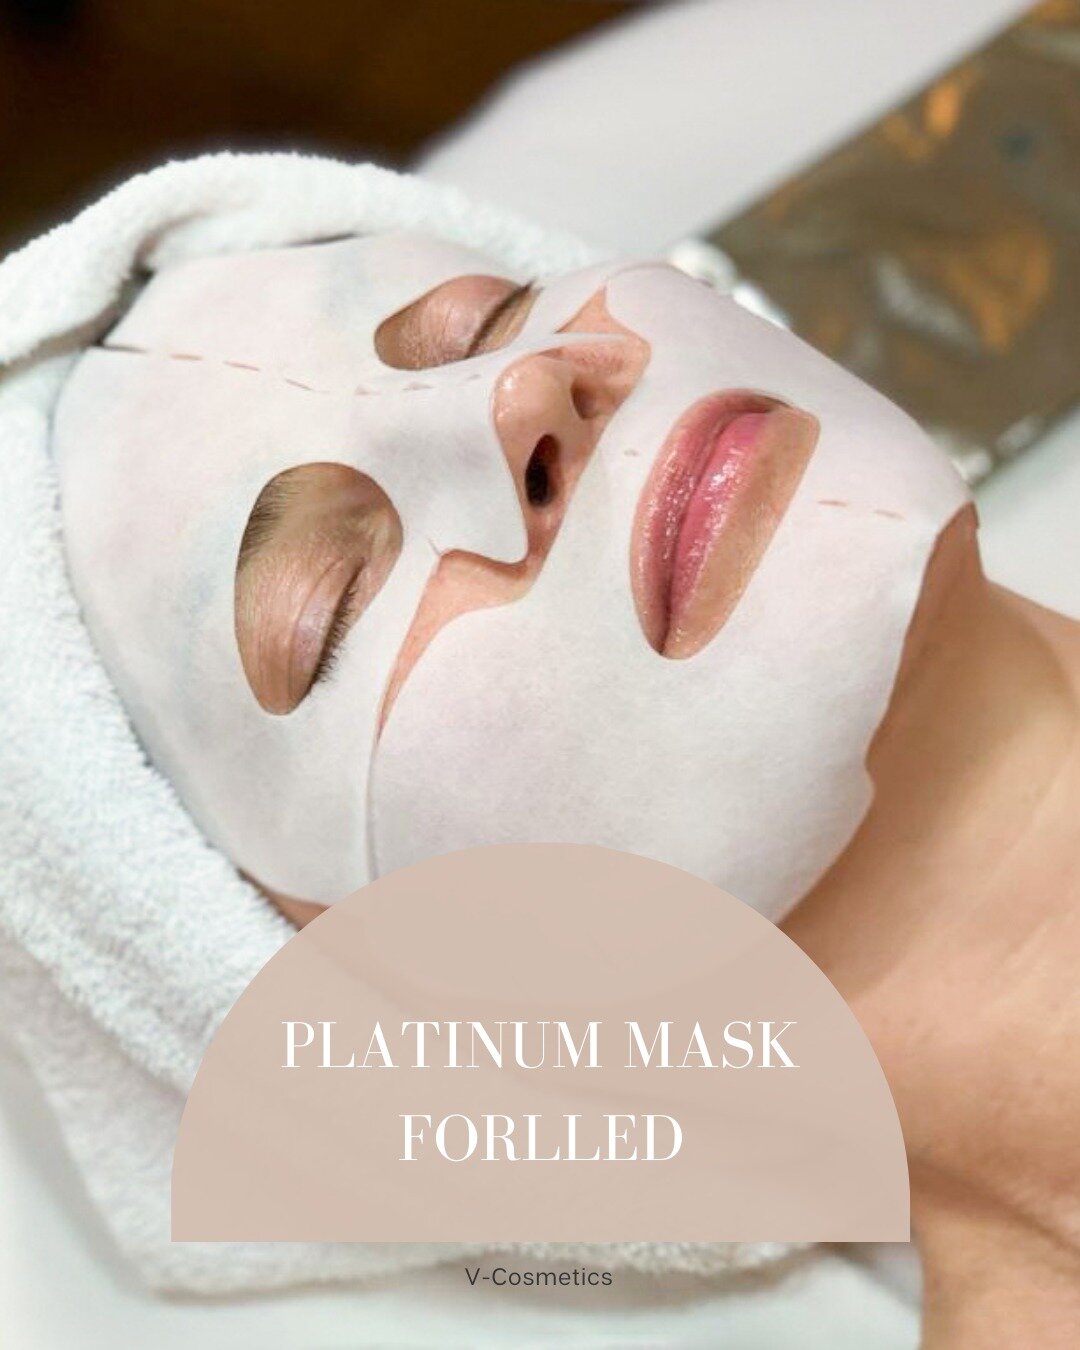 De voordelen van een Forlle'd behandeling met het Platinum Mask..

Dit unieke masker met laag-moleculair gewicht ge&iuml;oniseerd platina biedt een uitzonderlijke bescherming tegen antioxidanten en weerstand tegen de schadelijke werking van alle beke